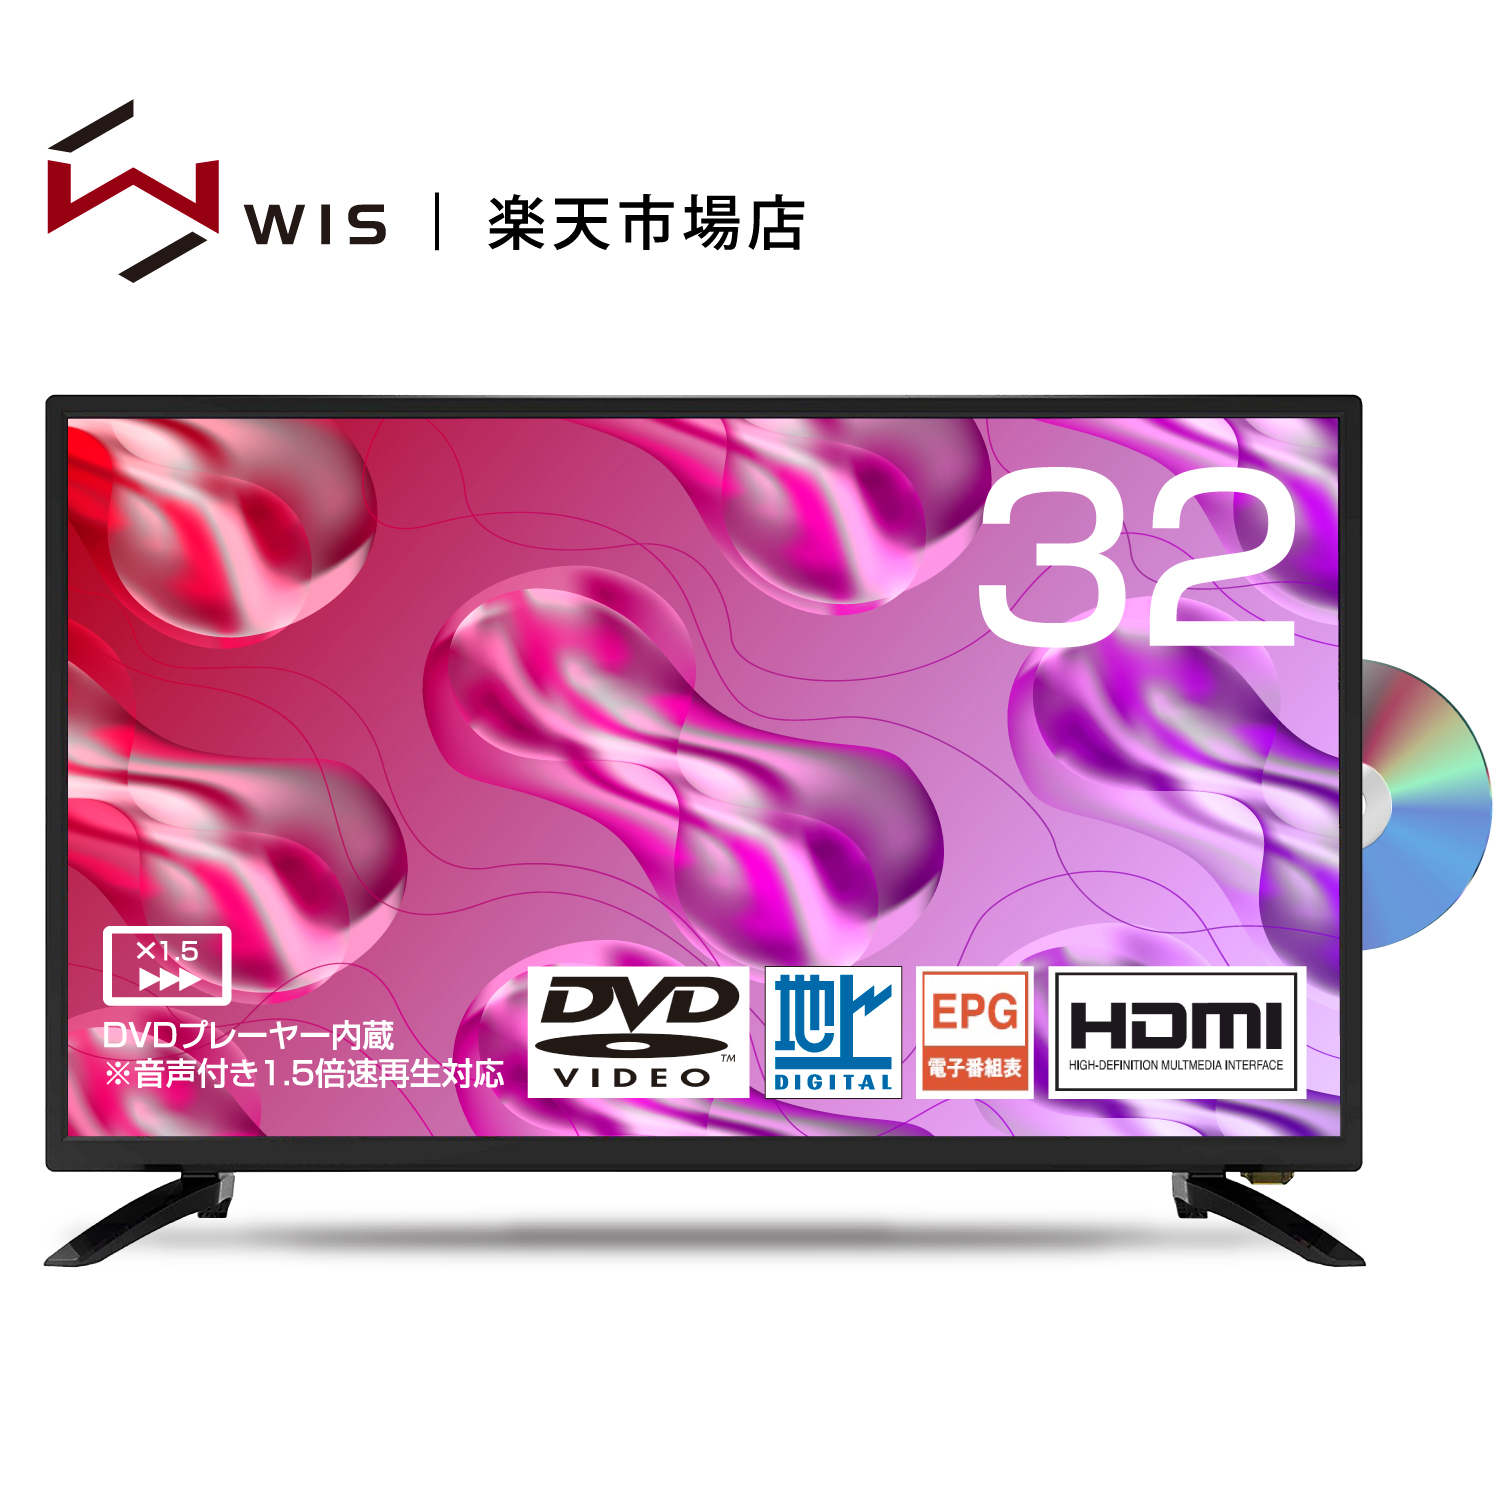 話題の人気 WIS 32インチ 液晶テレビ DVDプレーヤー内蔵 音声付き1.5